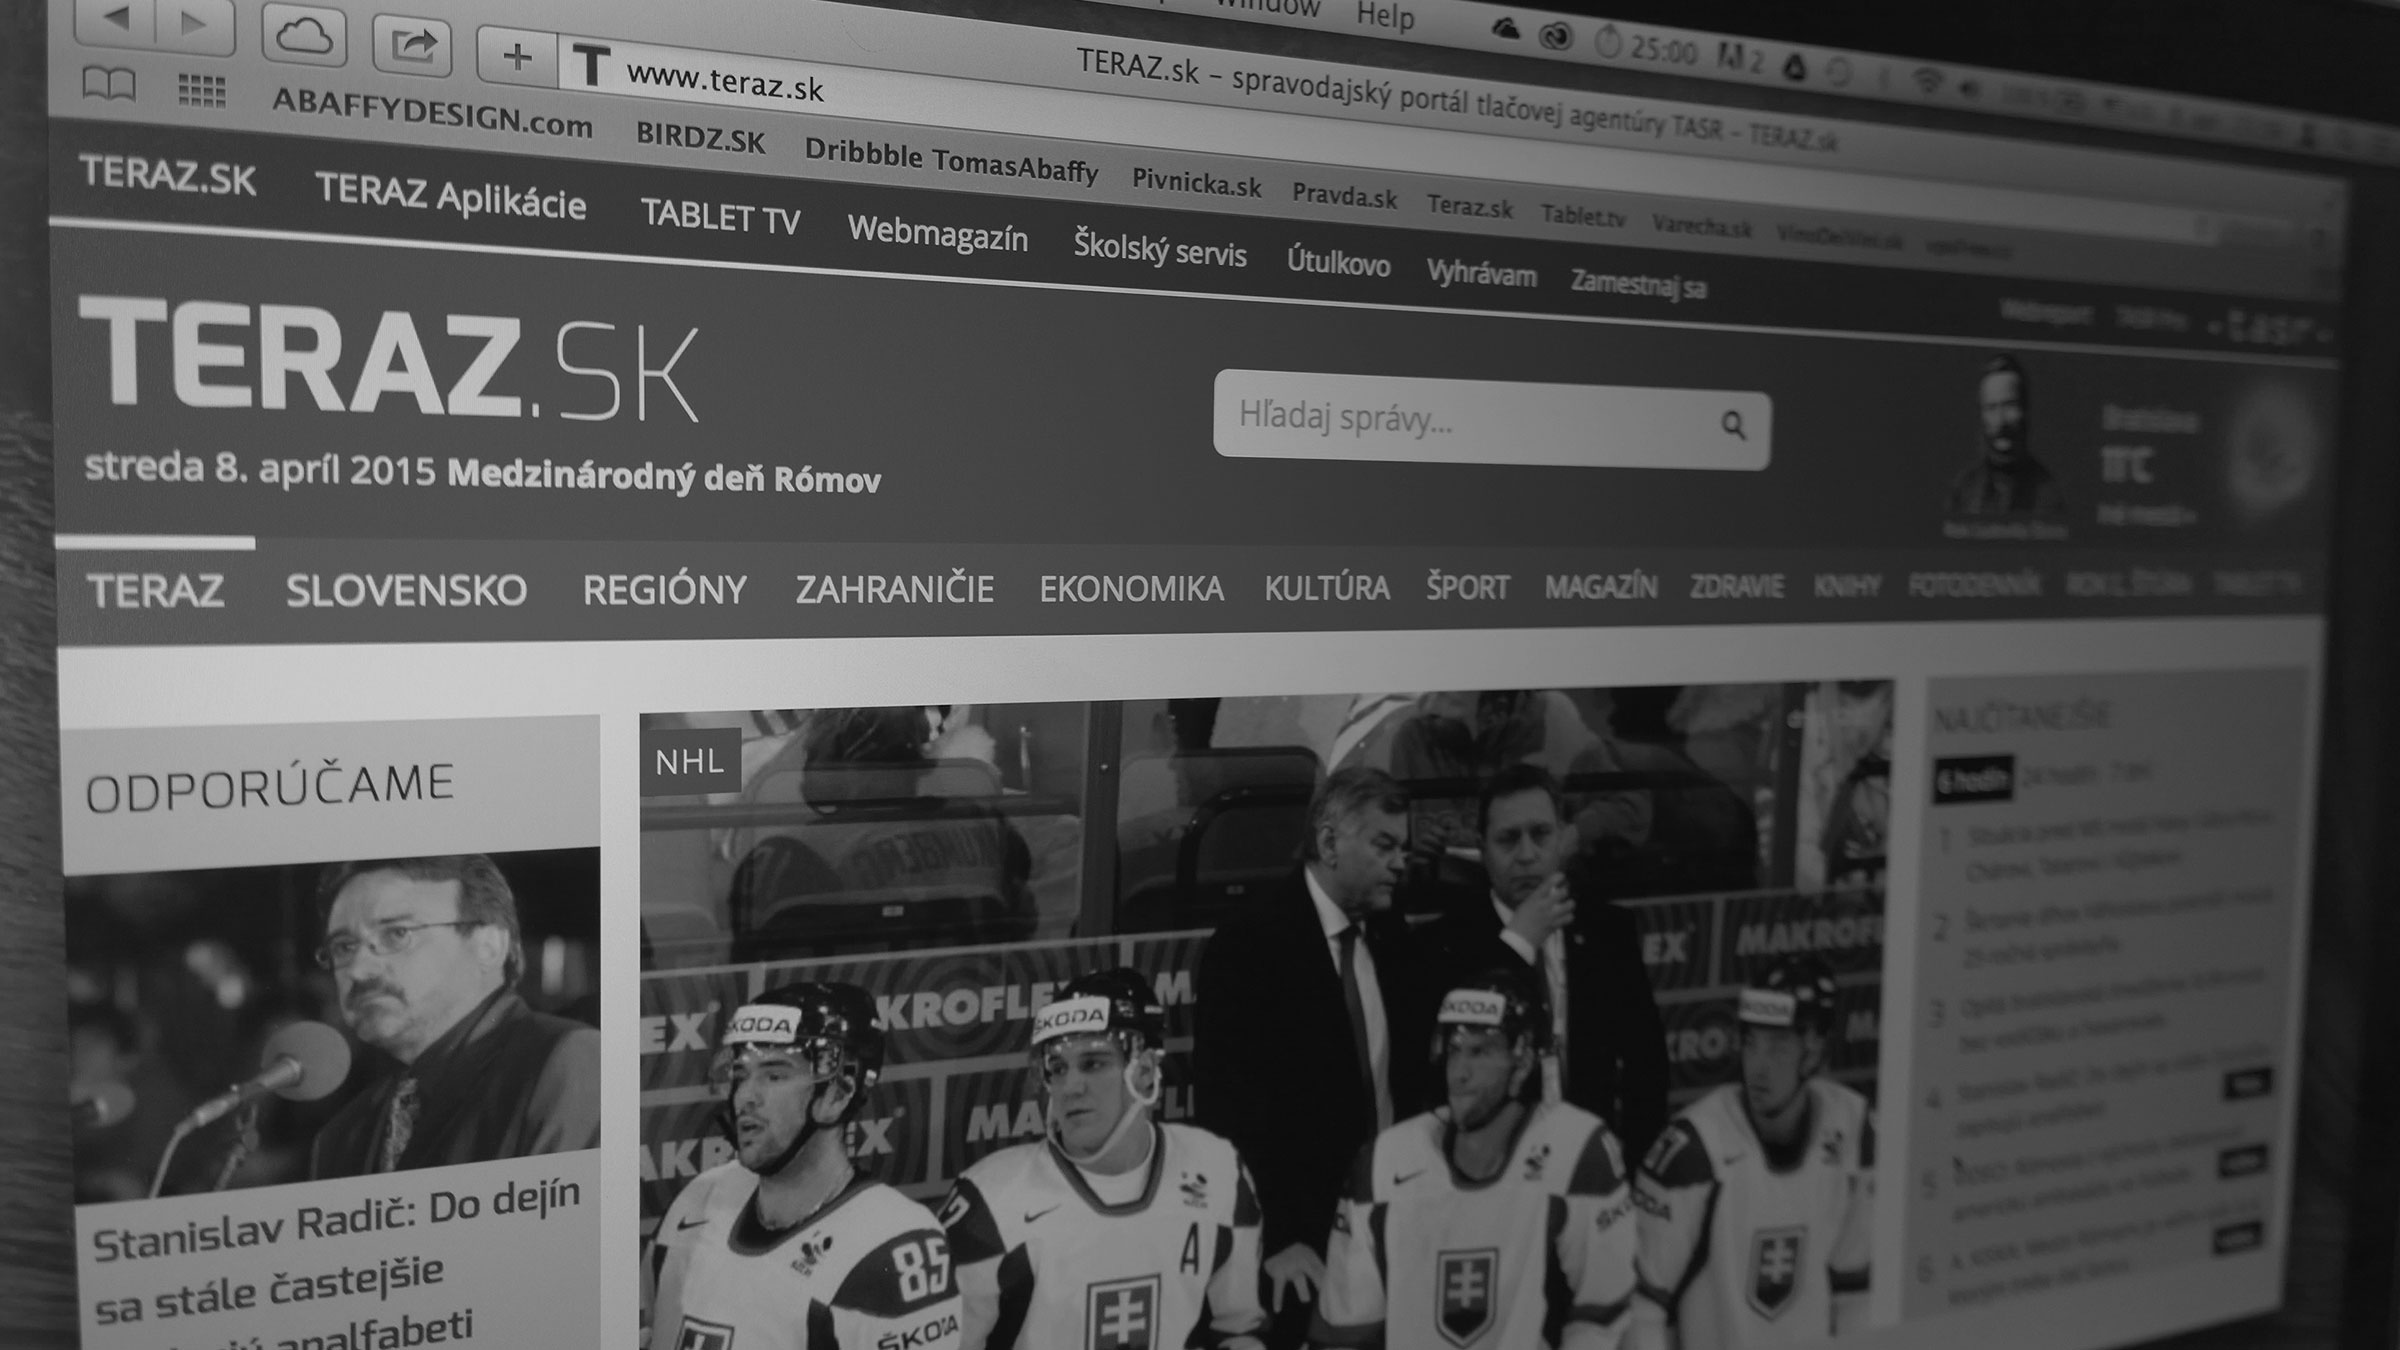 Teraz.sk - redesign spravodajského portálu